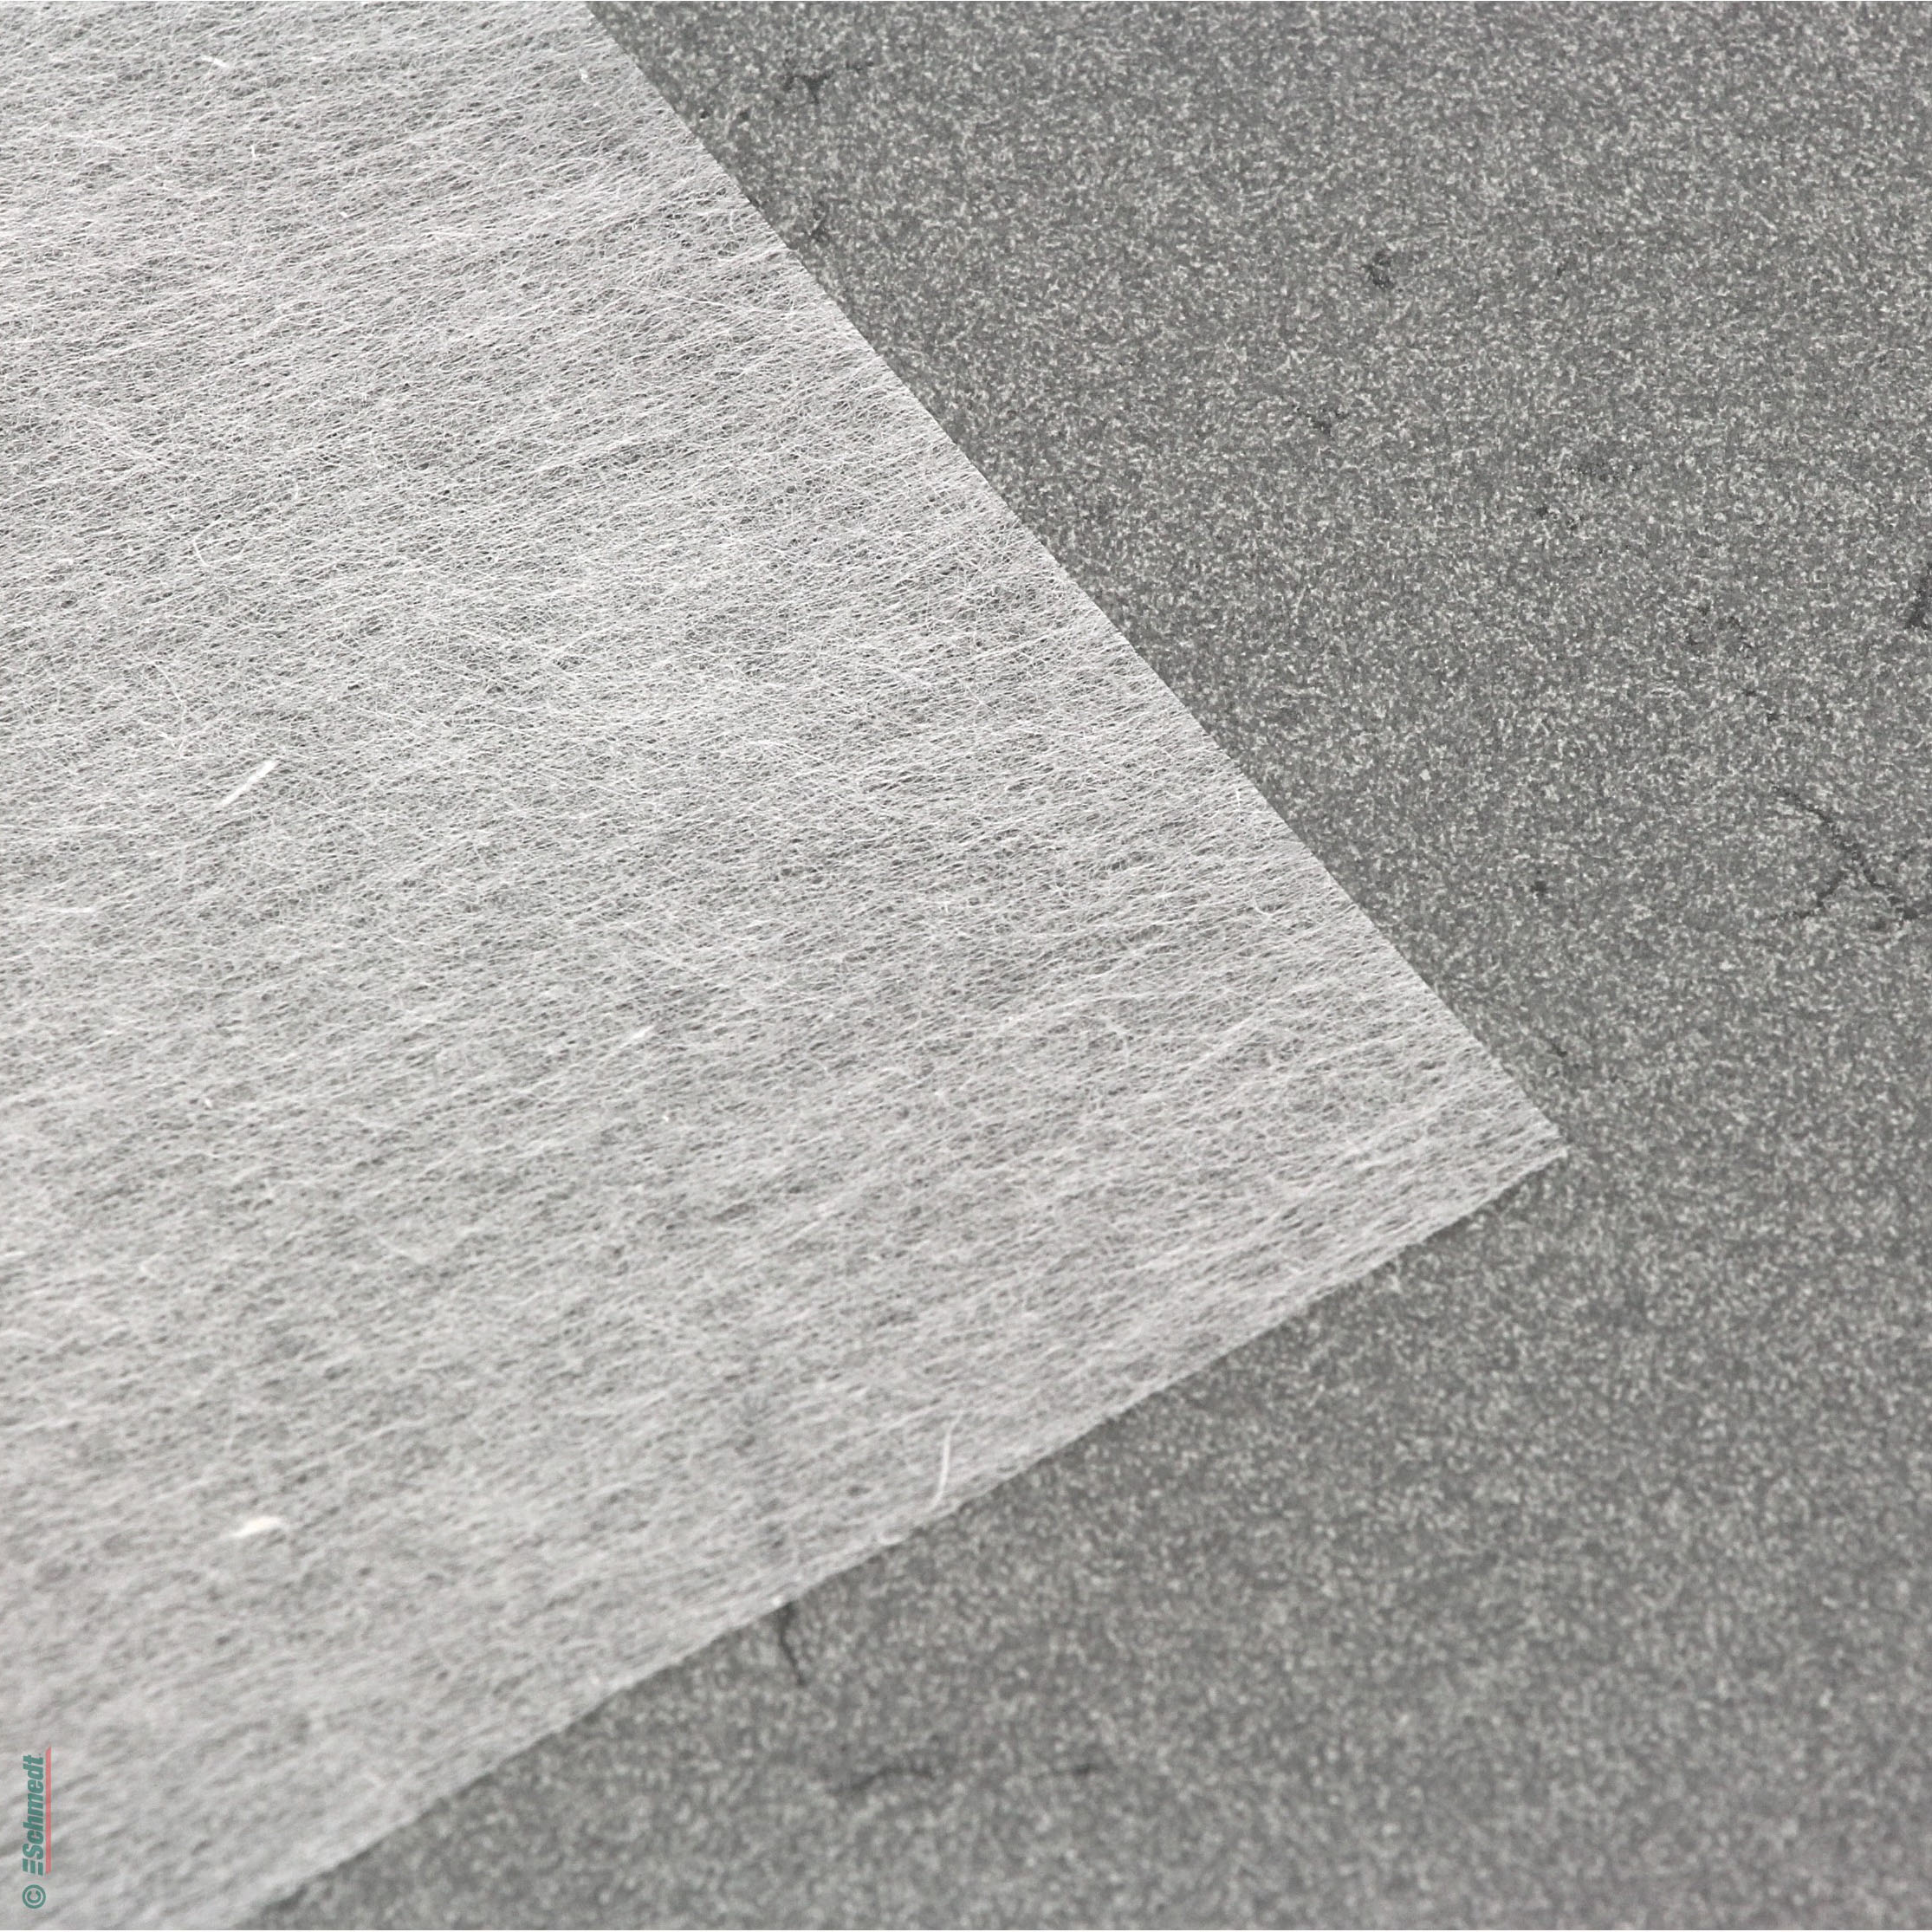 Japanpapier Kizuki-Kozo - Flächengewicht (in g/m²) 6 - Farbe weiß - Restaurierung, Archivierung, Konservierung...